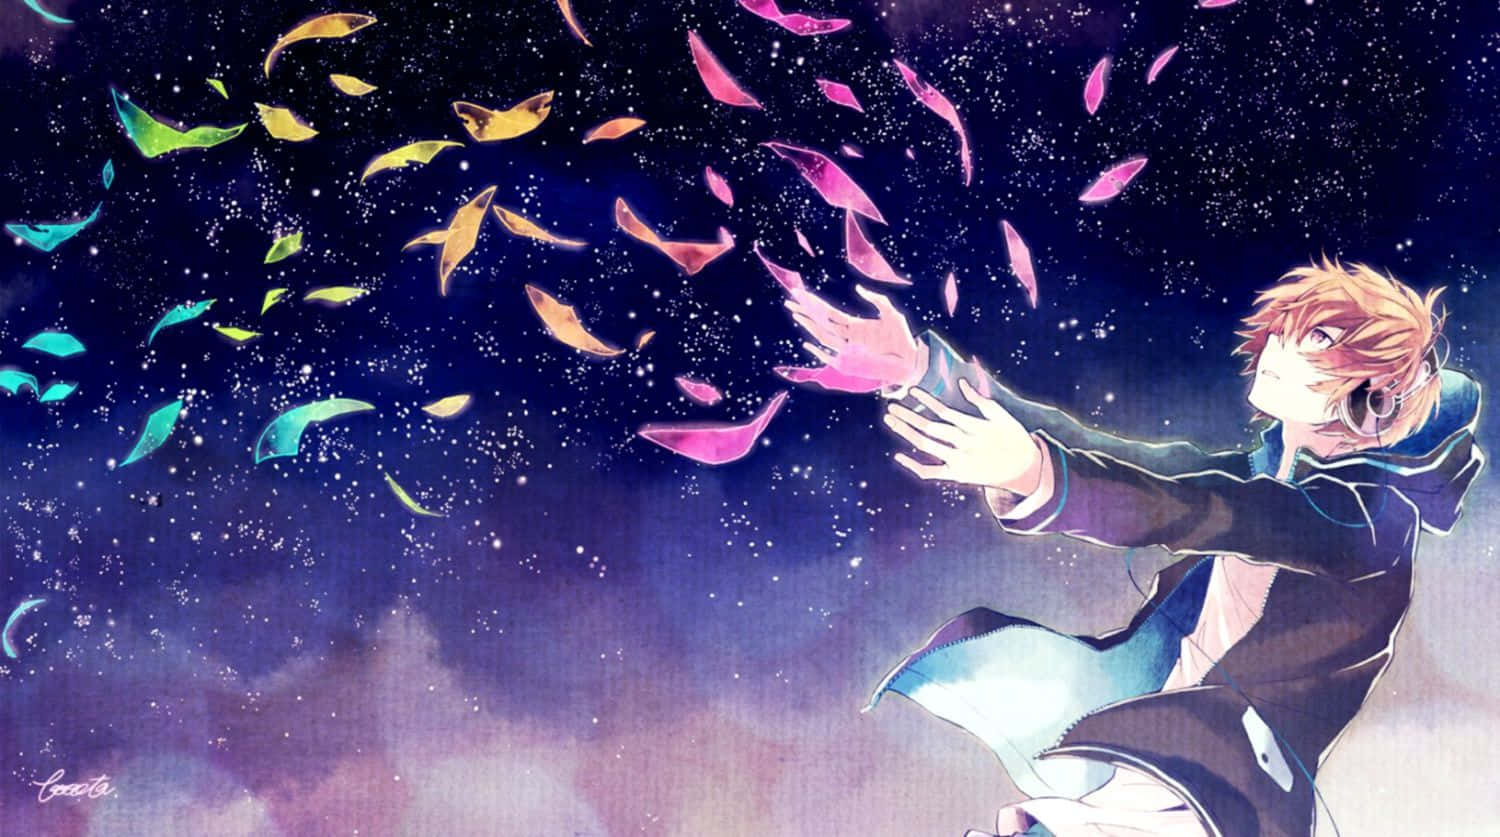 Einecoole Und Traurige Anime-szene Wallpaper